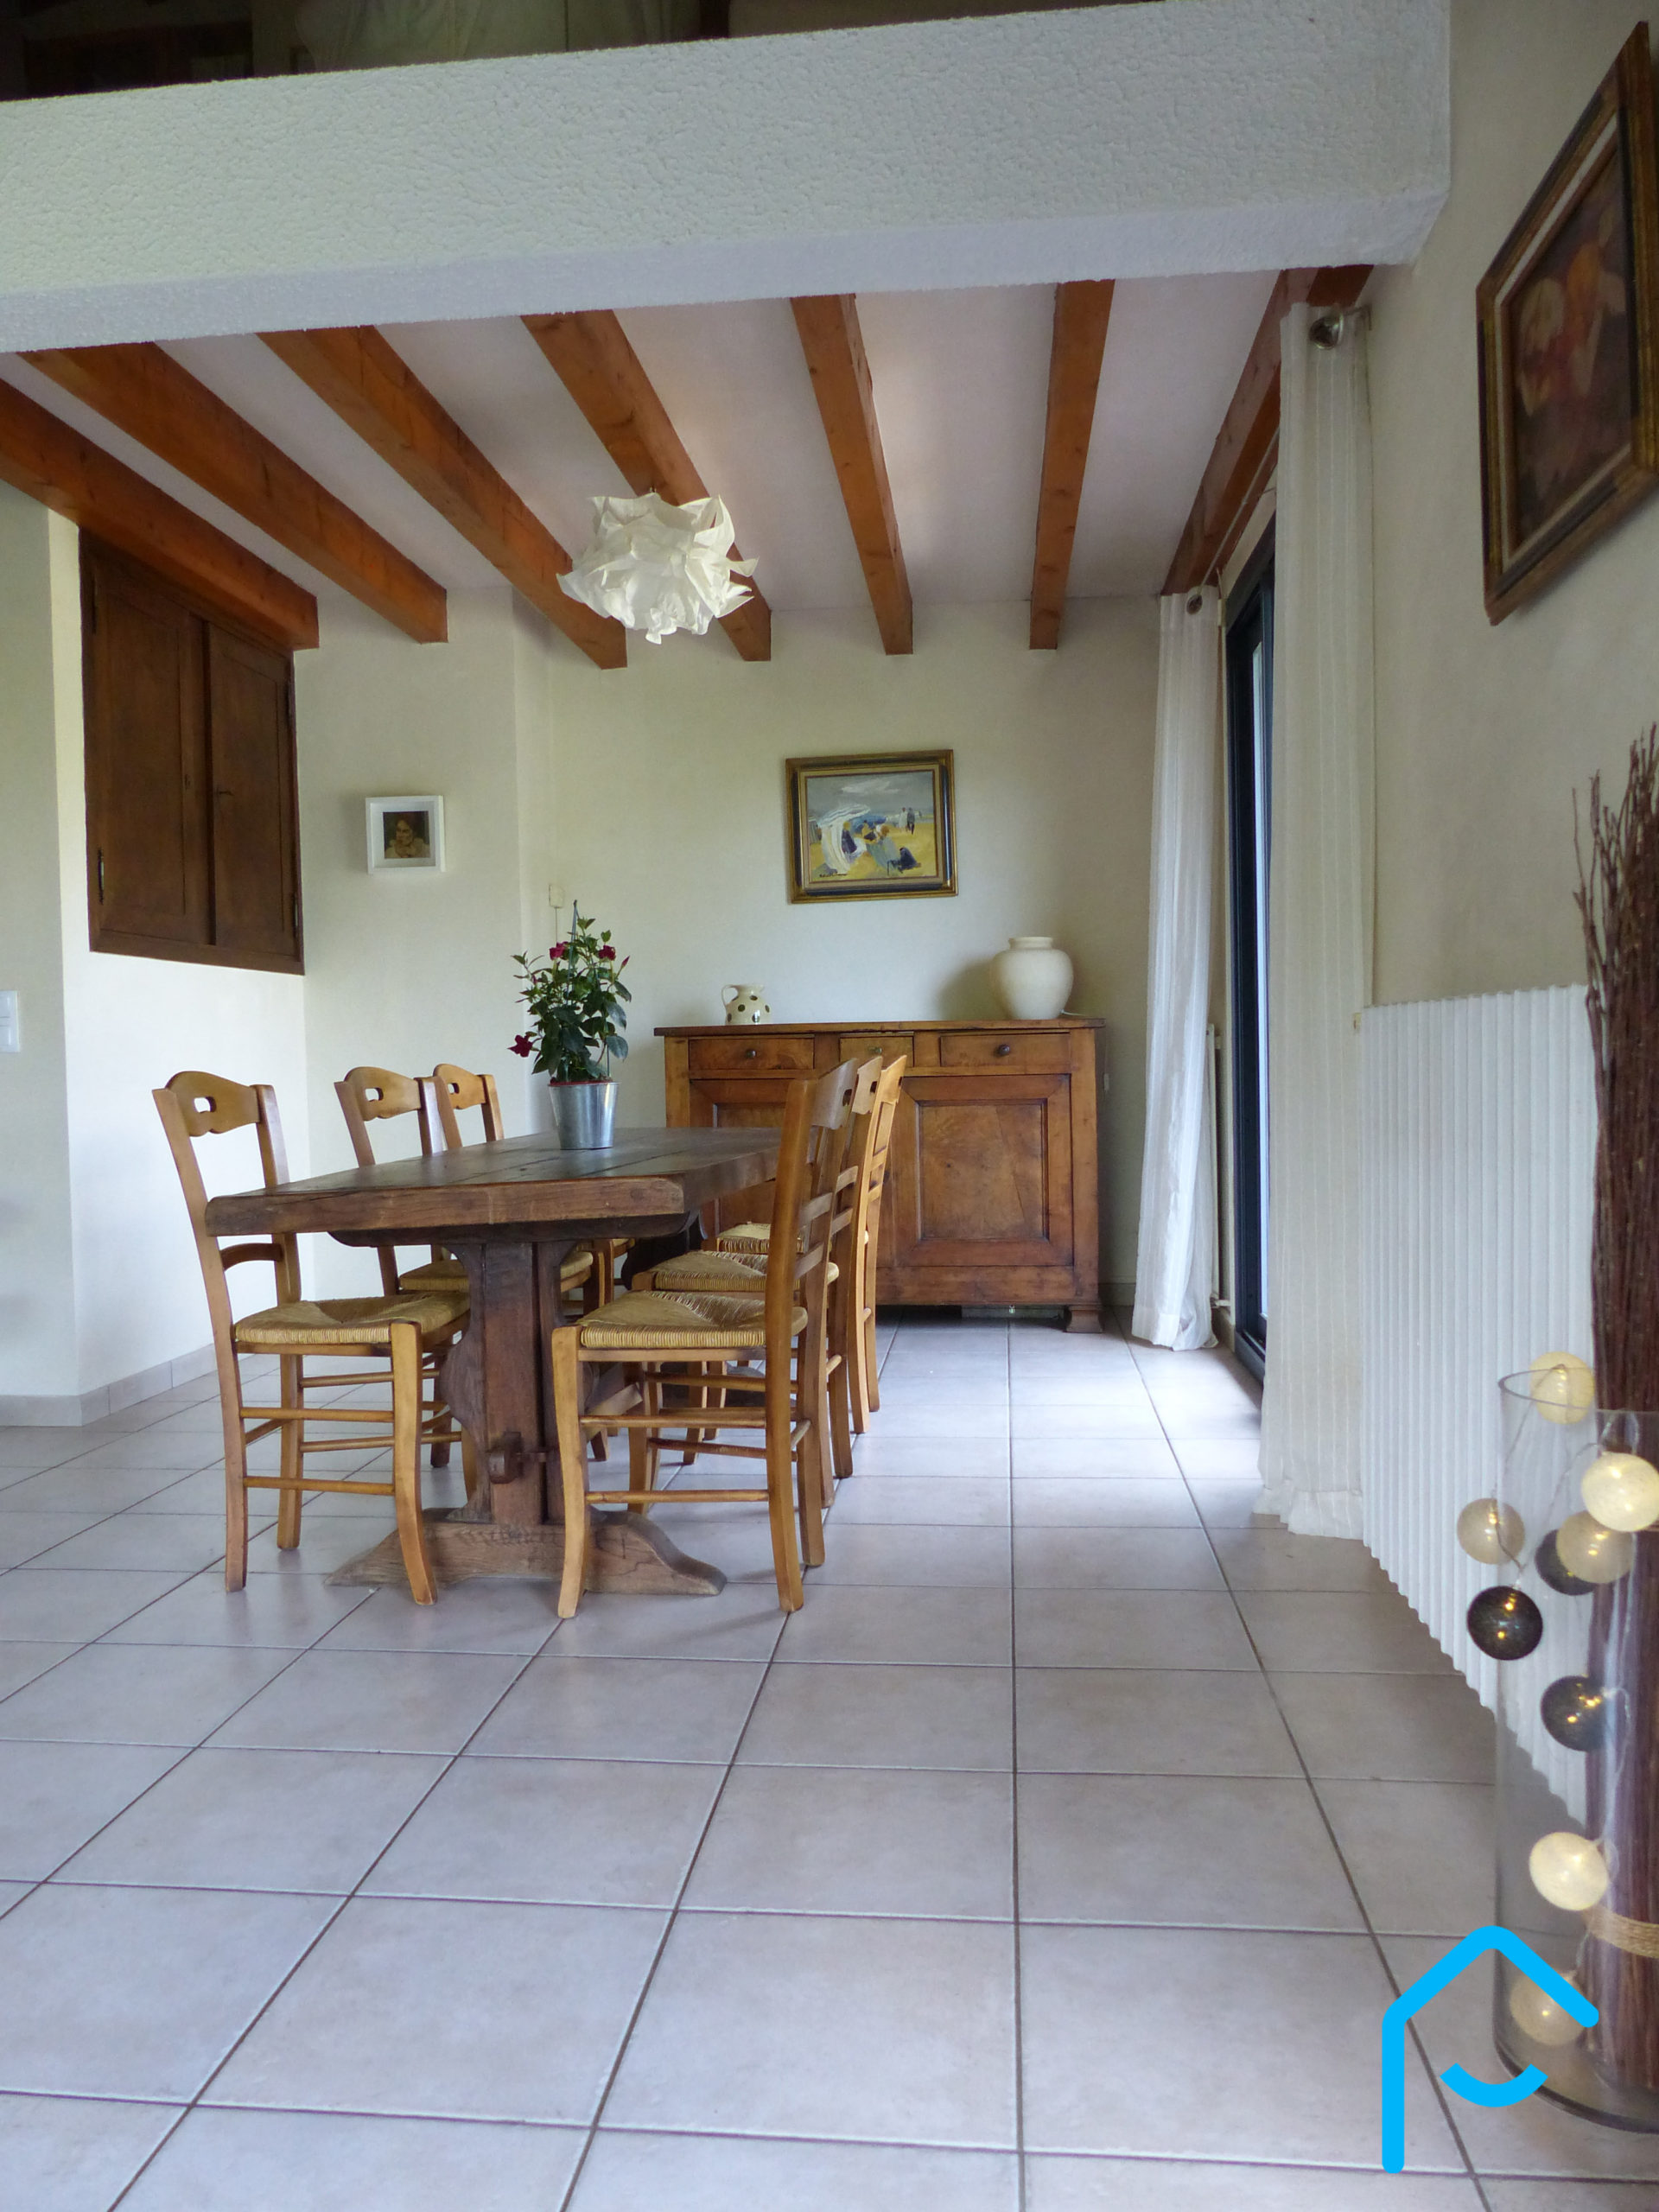 A vendre Savoie Chambéry Jacob-Bellecombette maison individuelle terraini 5 chambres quartier résidentiel rare à la vente vue 13